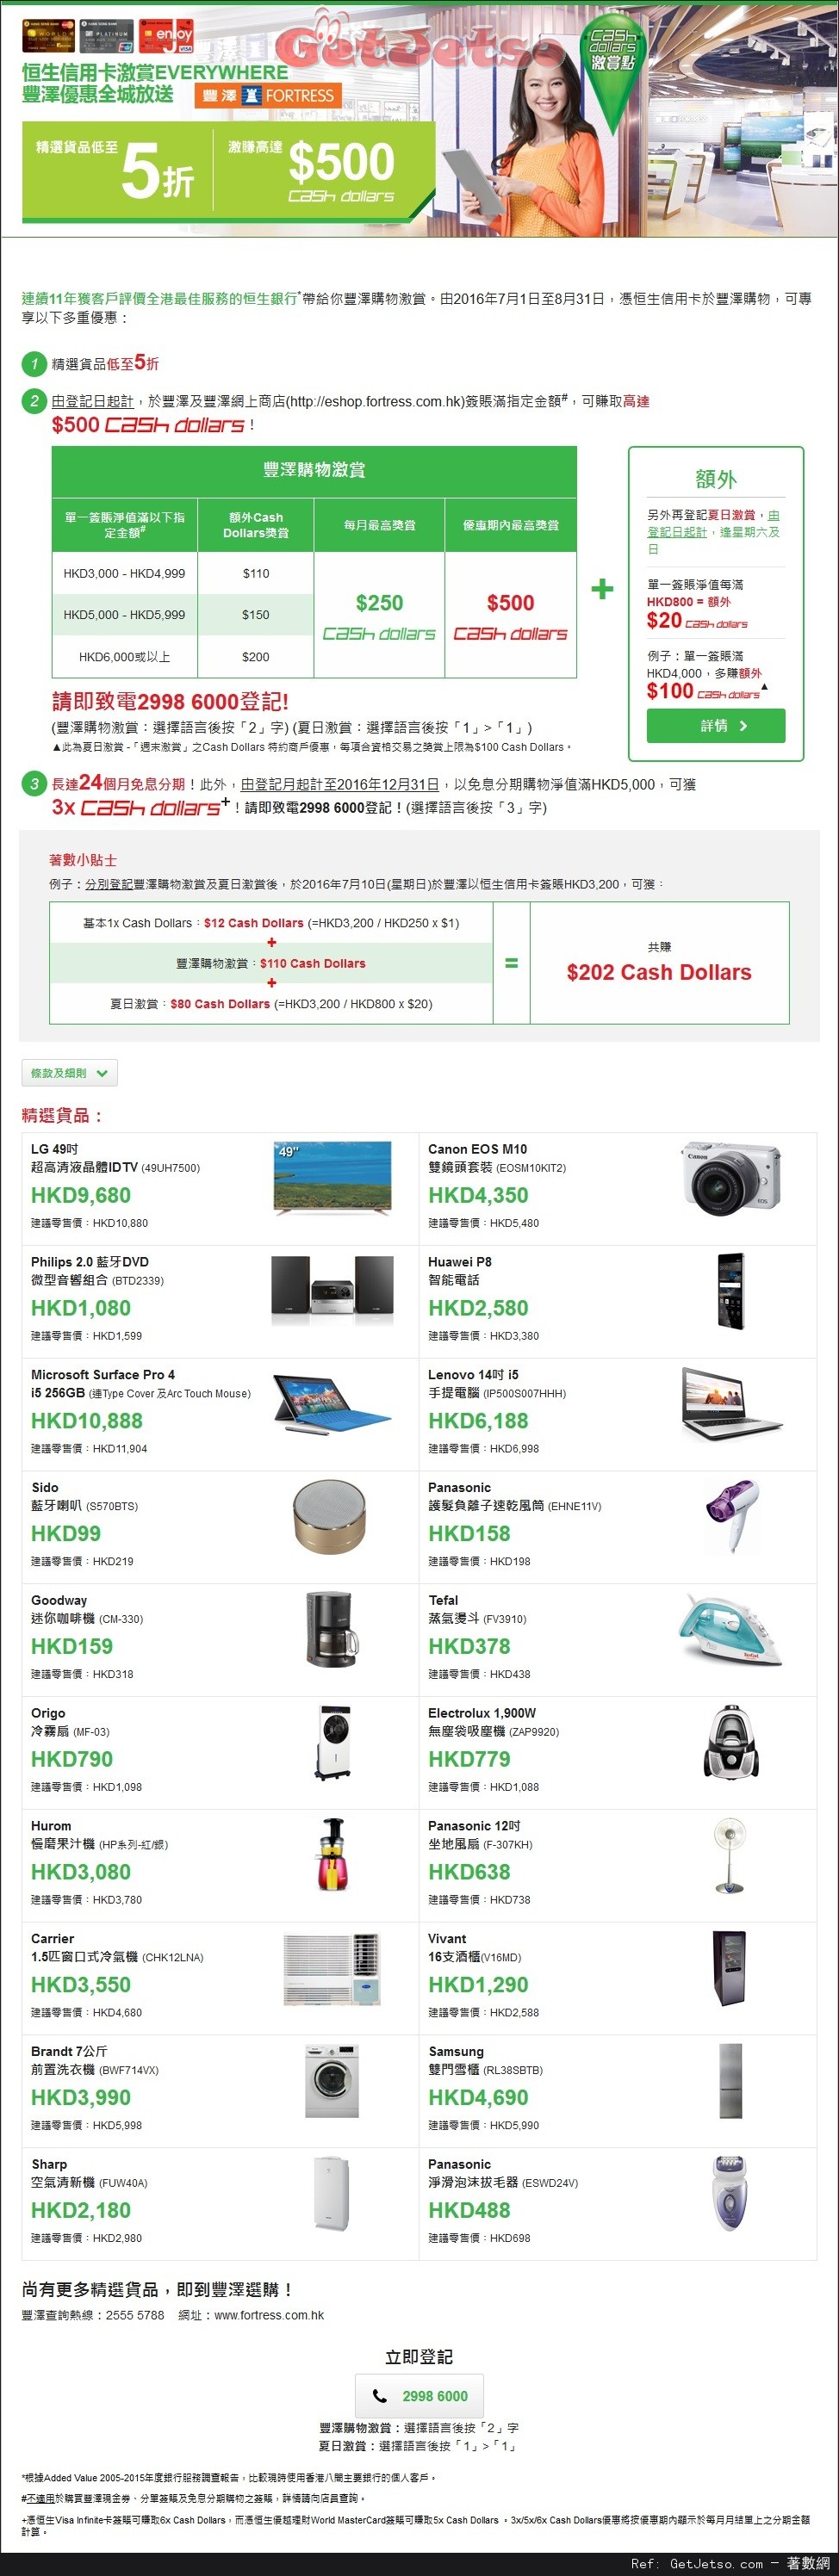 豐澤電器低至5折價優惠@恒生信用卡(至16年8月31日)圖片1